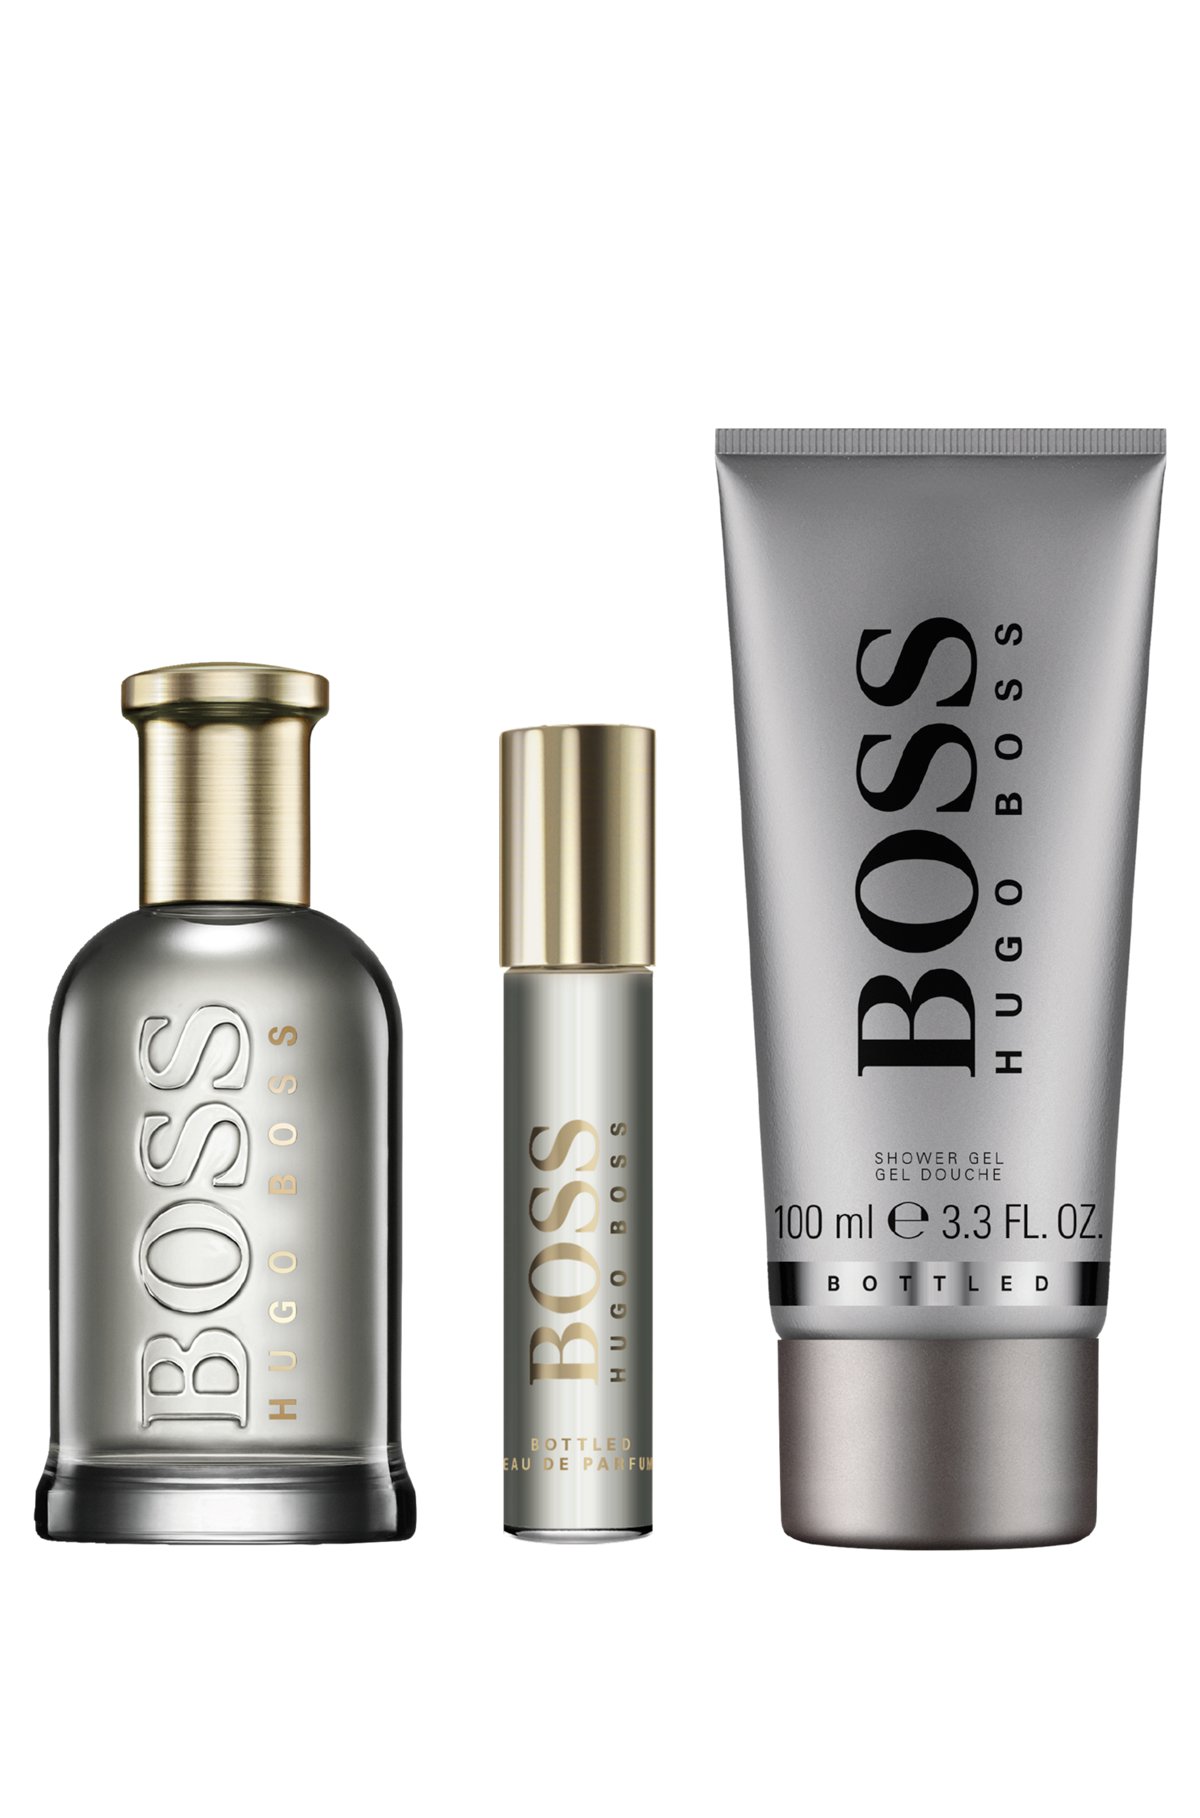 BOSS Bottled fragrance gift set, Assorted-Pre-Pack